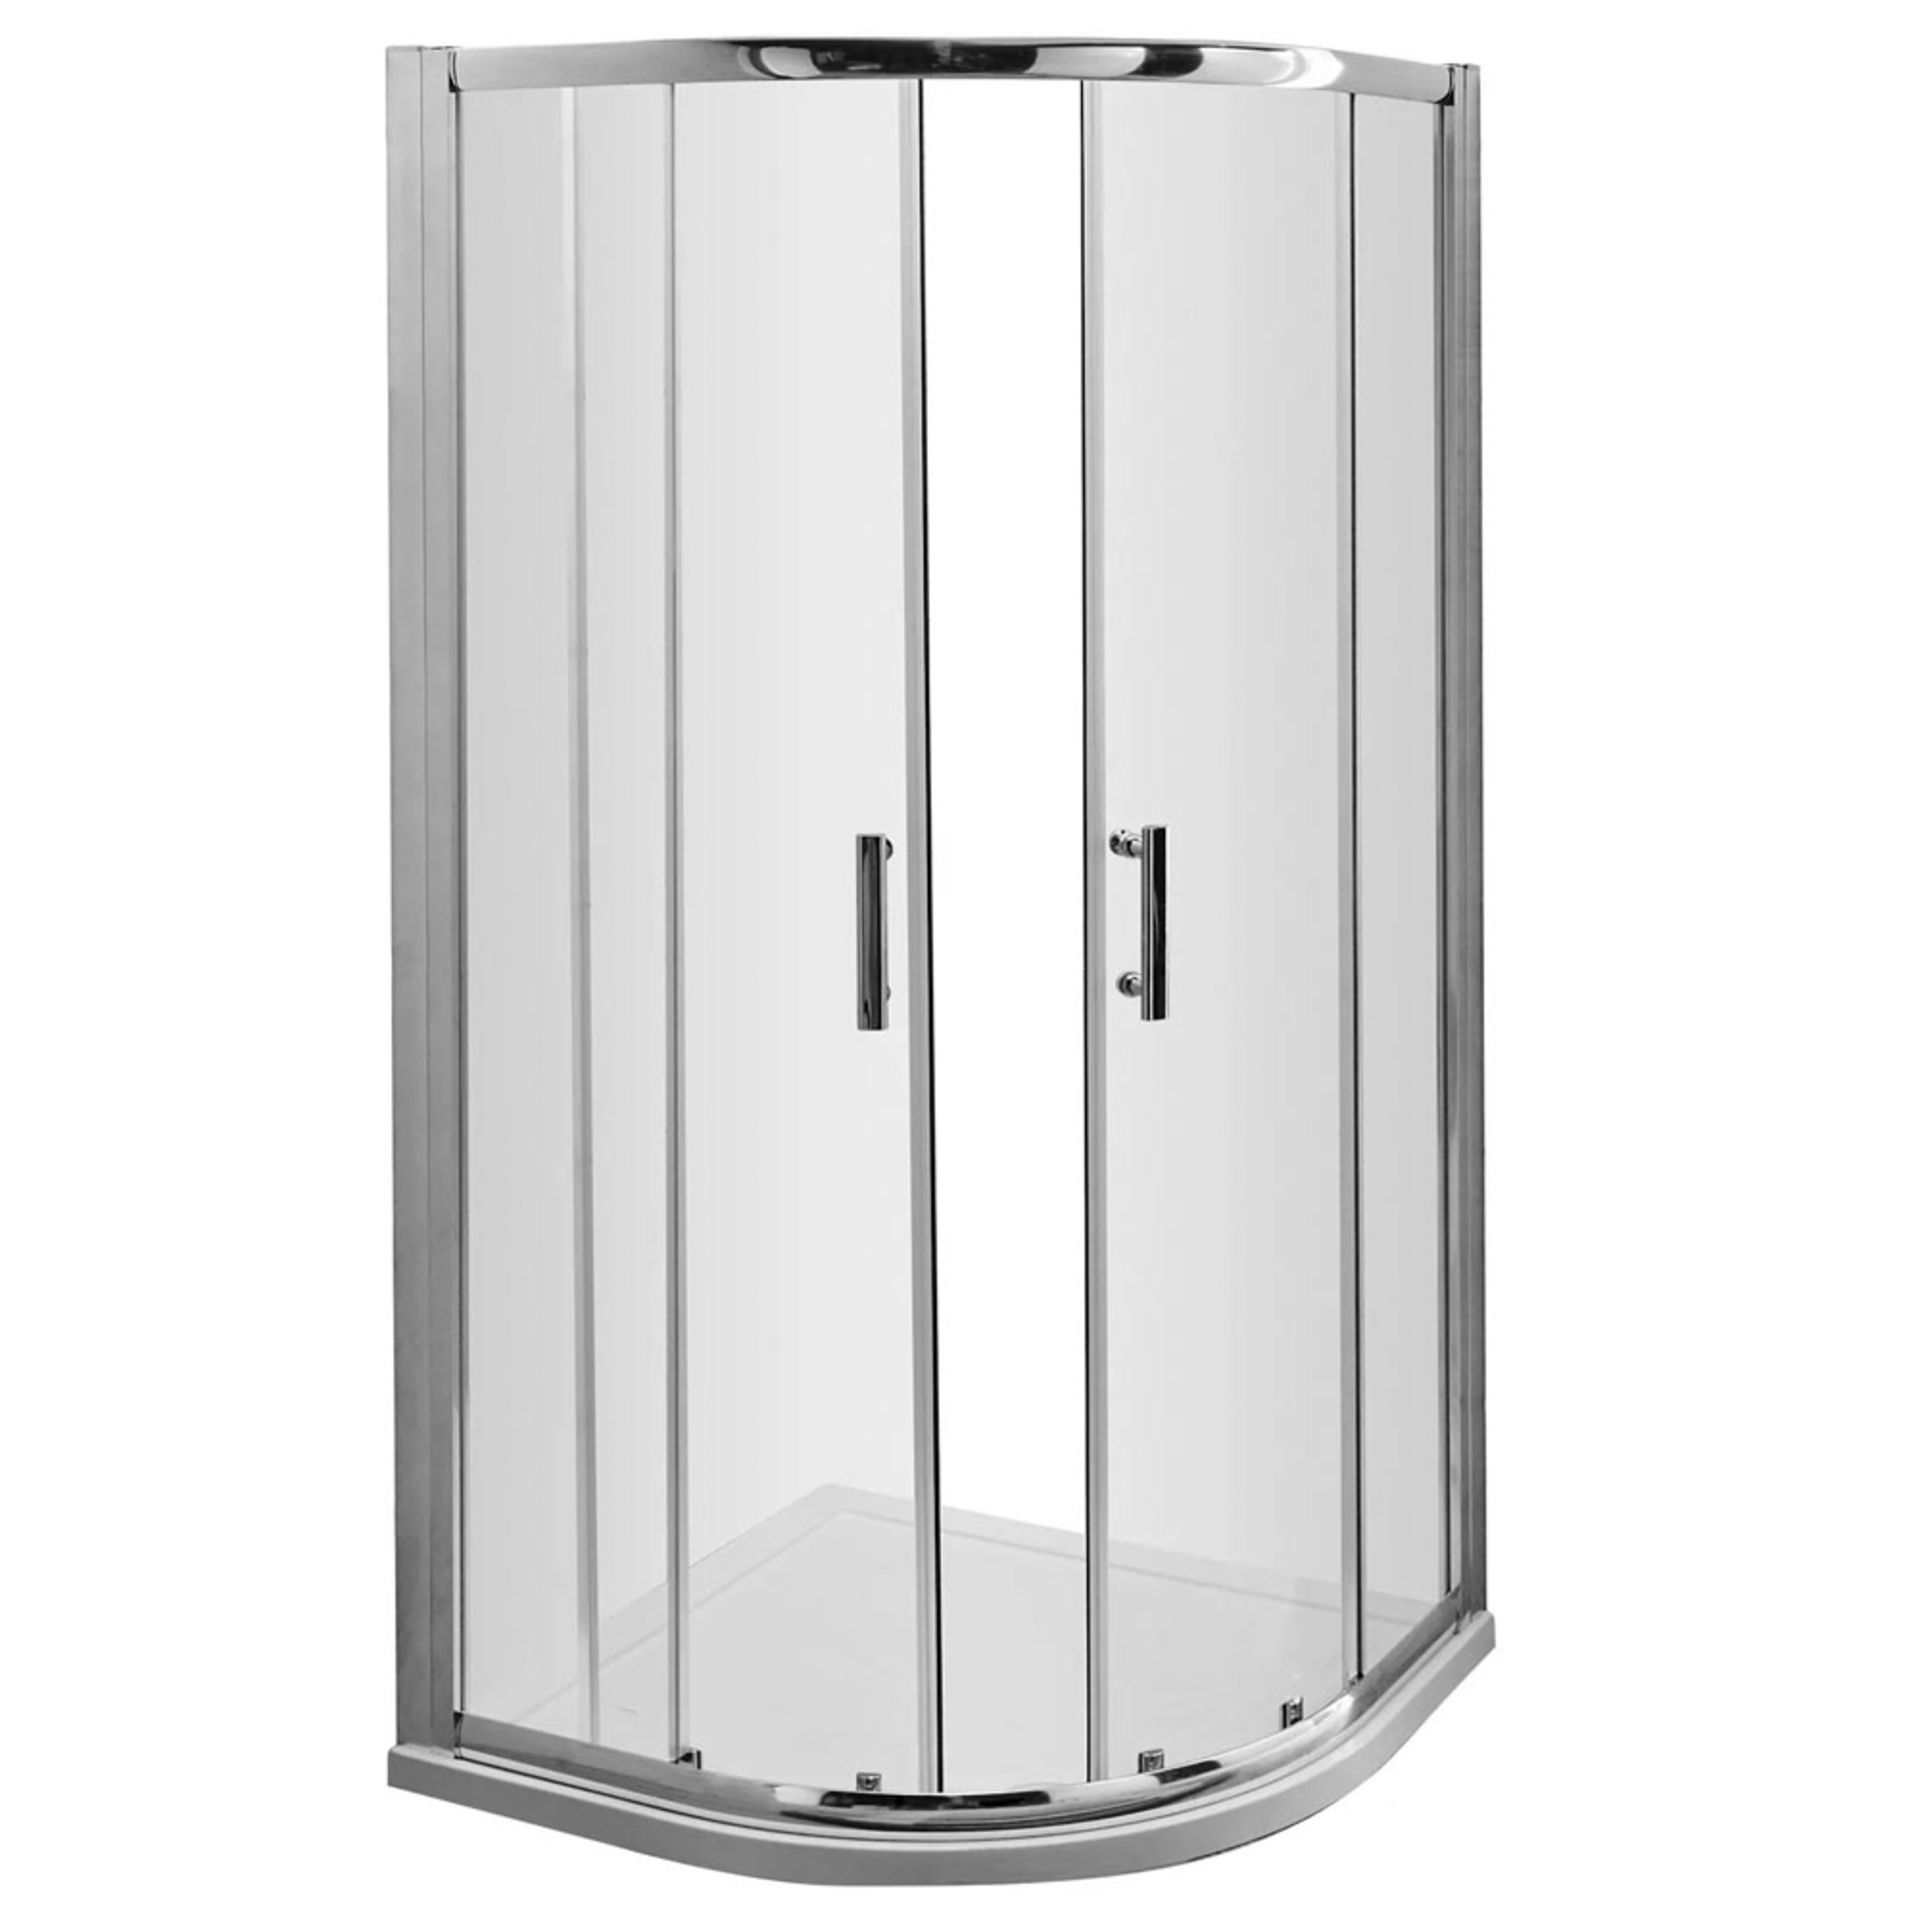 Twyfords 800x800mm - Premium EasyClean Sliding Door Quadrant Shower Enclosure. RRP £499.99 Hi... - Image 2 of 3